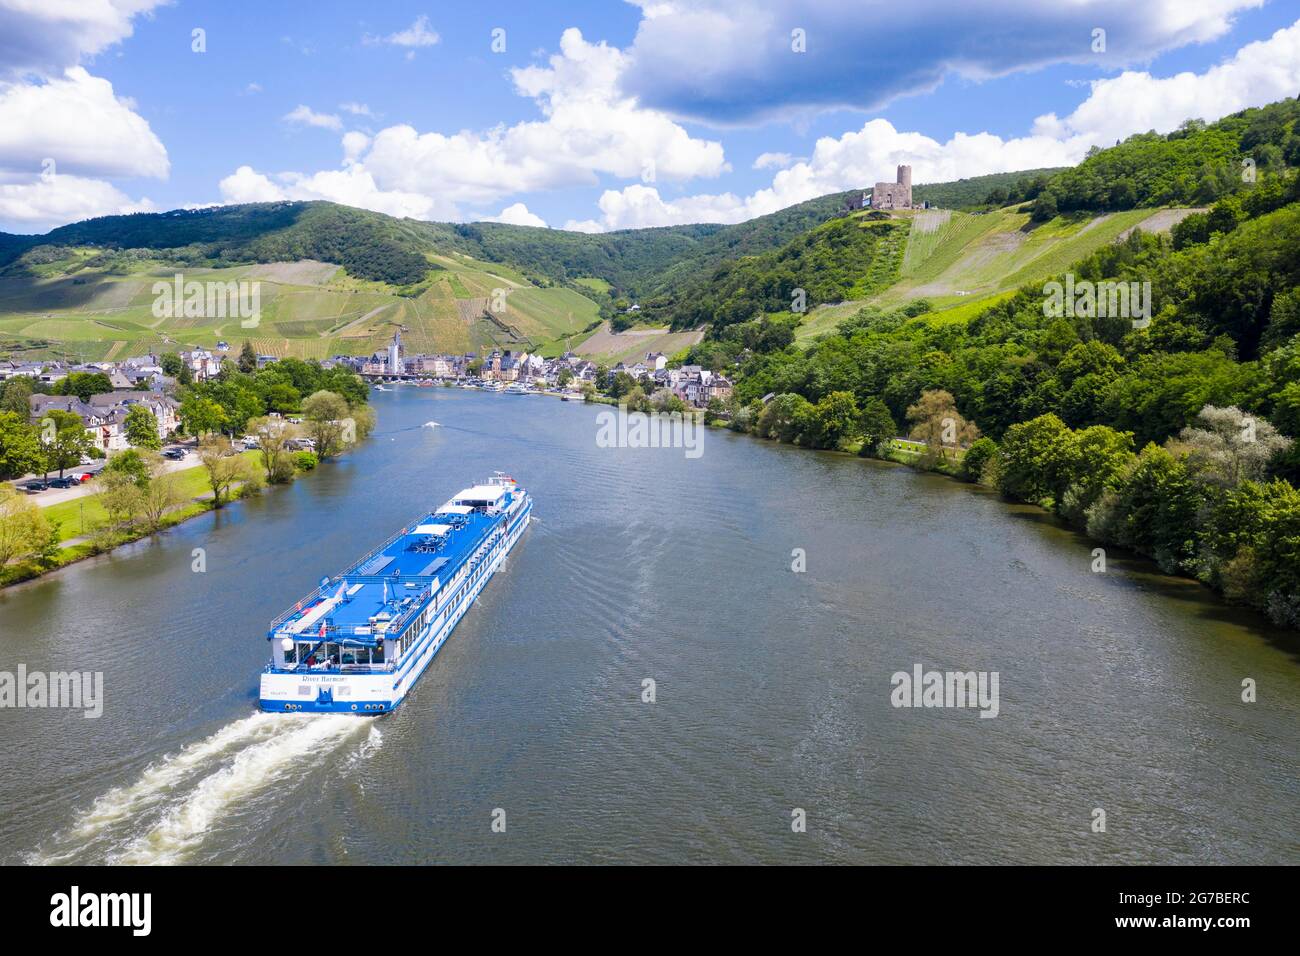 Croisière sur la rivière Shiprelaching Bernkastel Kues, vallée de la Moselle, Allemagne Banque D'Images